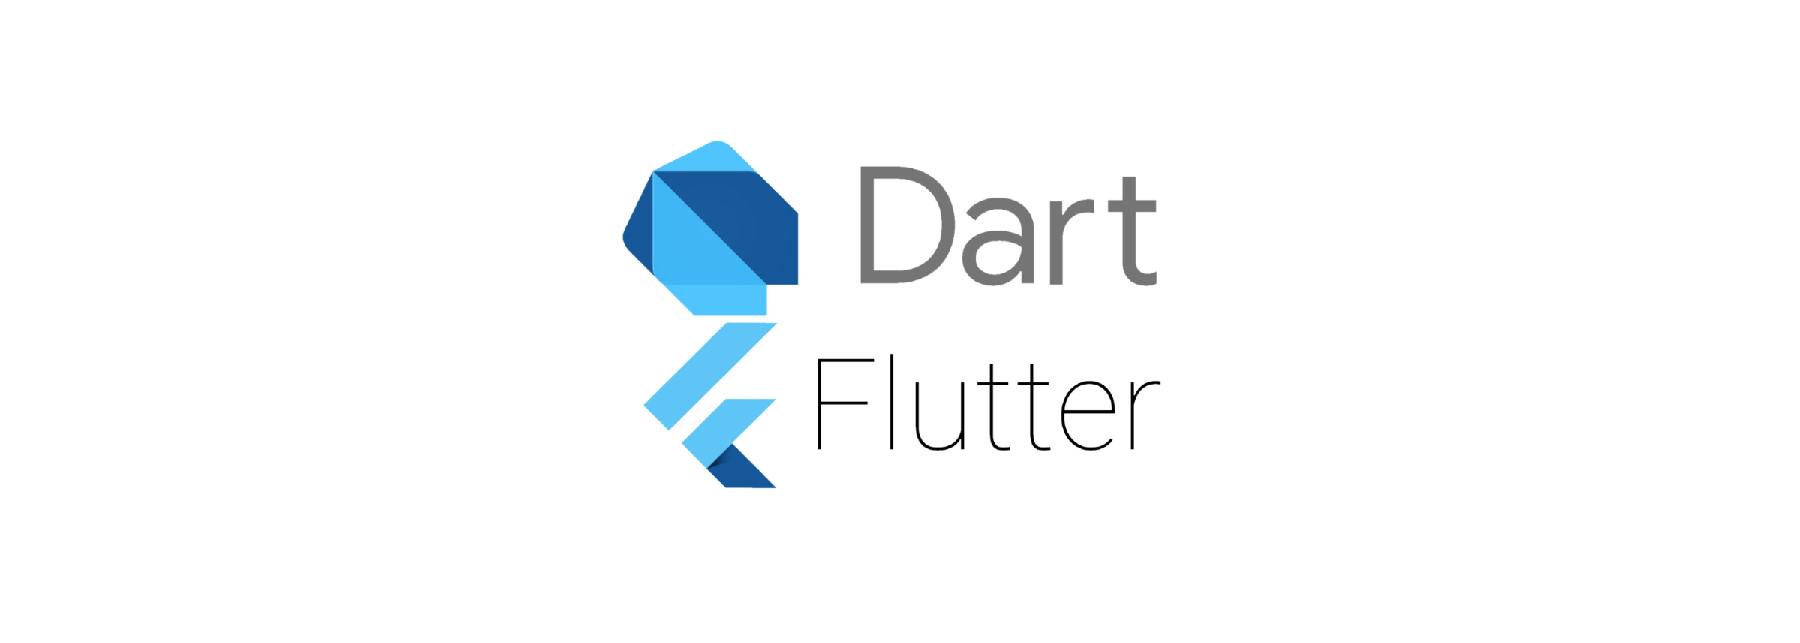 Flutter - Dart: Một số Dart Array Methods trong Flutter bạn nên biết